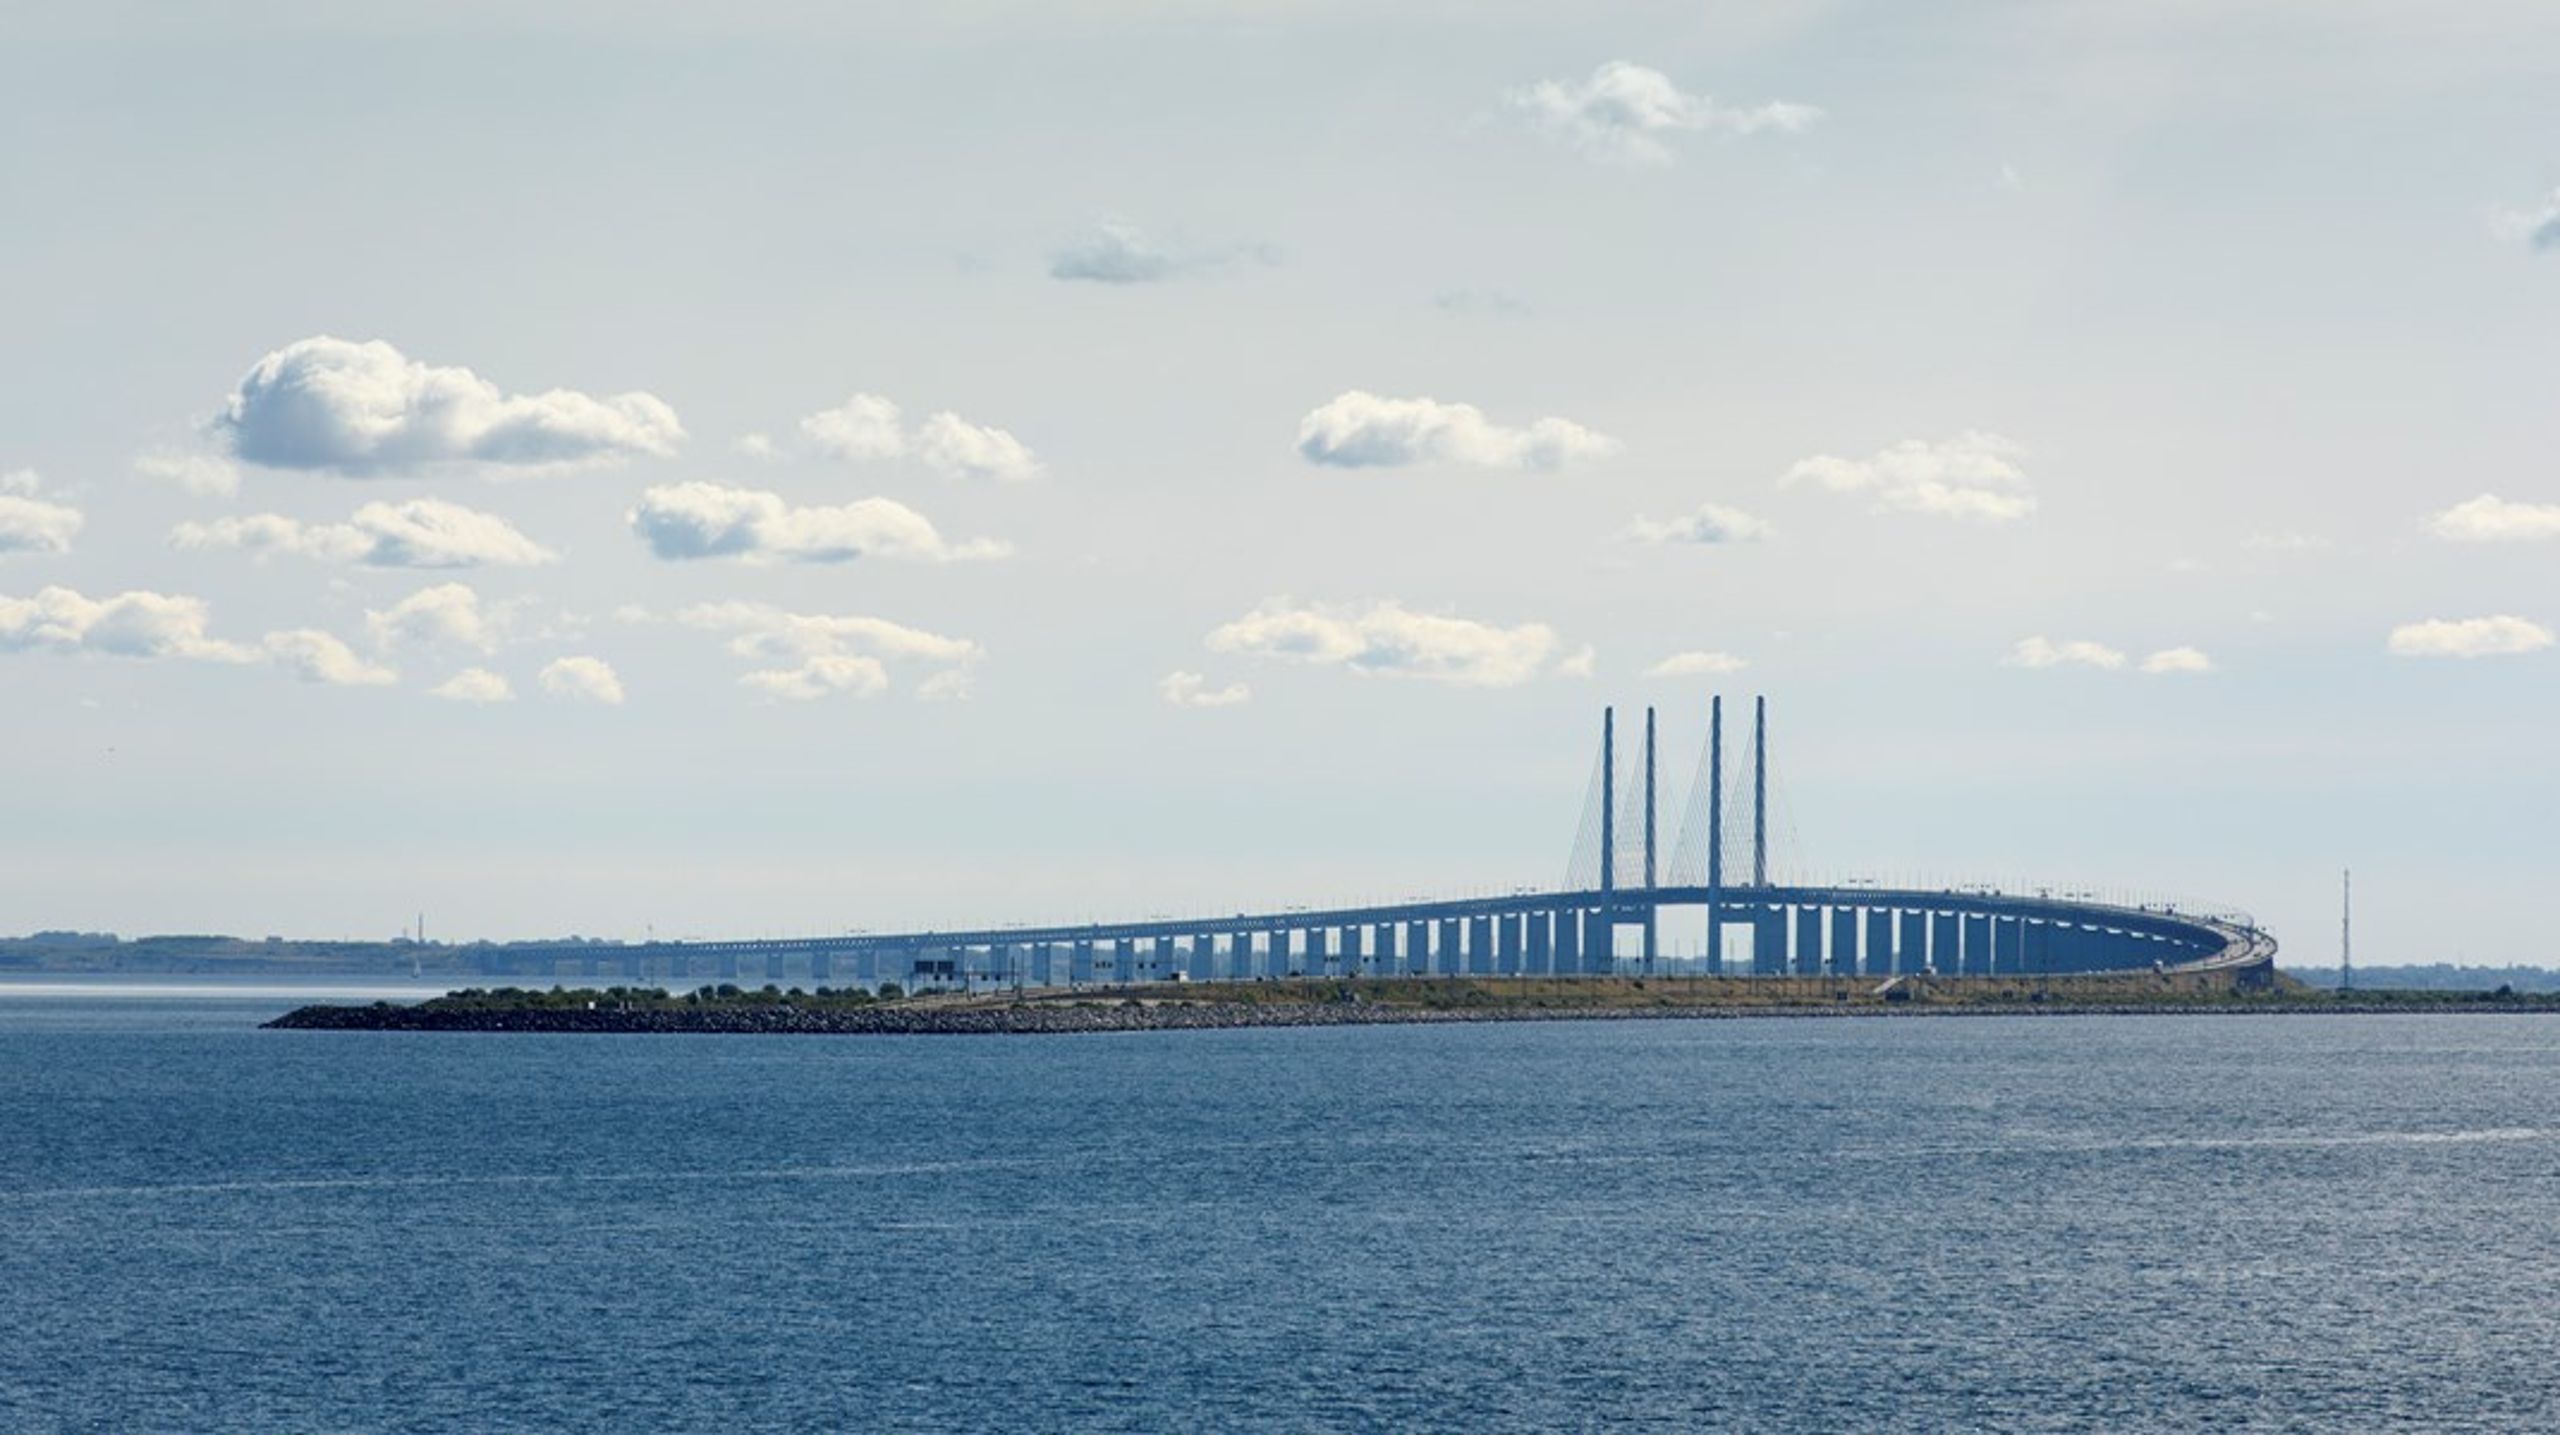 Øresundsbroen, som nu nærmer sig sit 25-års jubilæum, er ikke blot en fysisk forbindelse mellem vores lande. Broen repræsenterer også en vision om frihed. Men trods årtier med øresundsintegration, er udfordringerne desværre stadig mange, skriver&nbsp;Sigrid Friis Frederiksen &amp; Sara Wettergren.&nbsp;